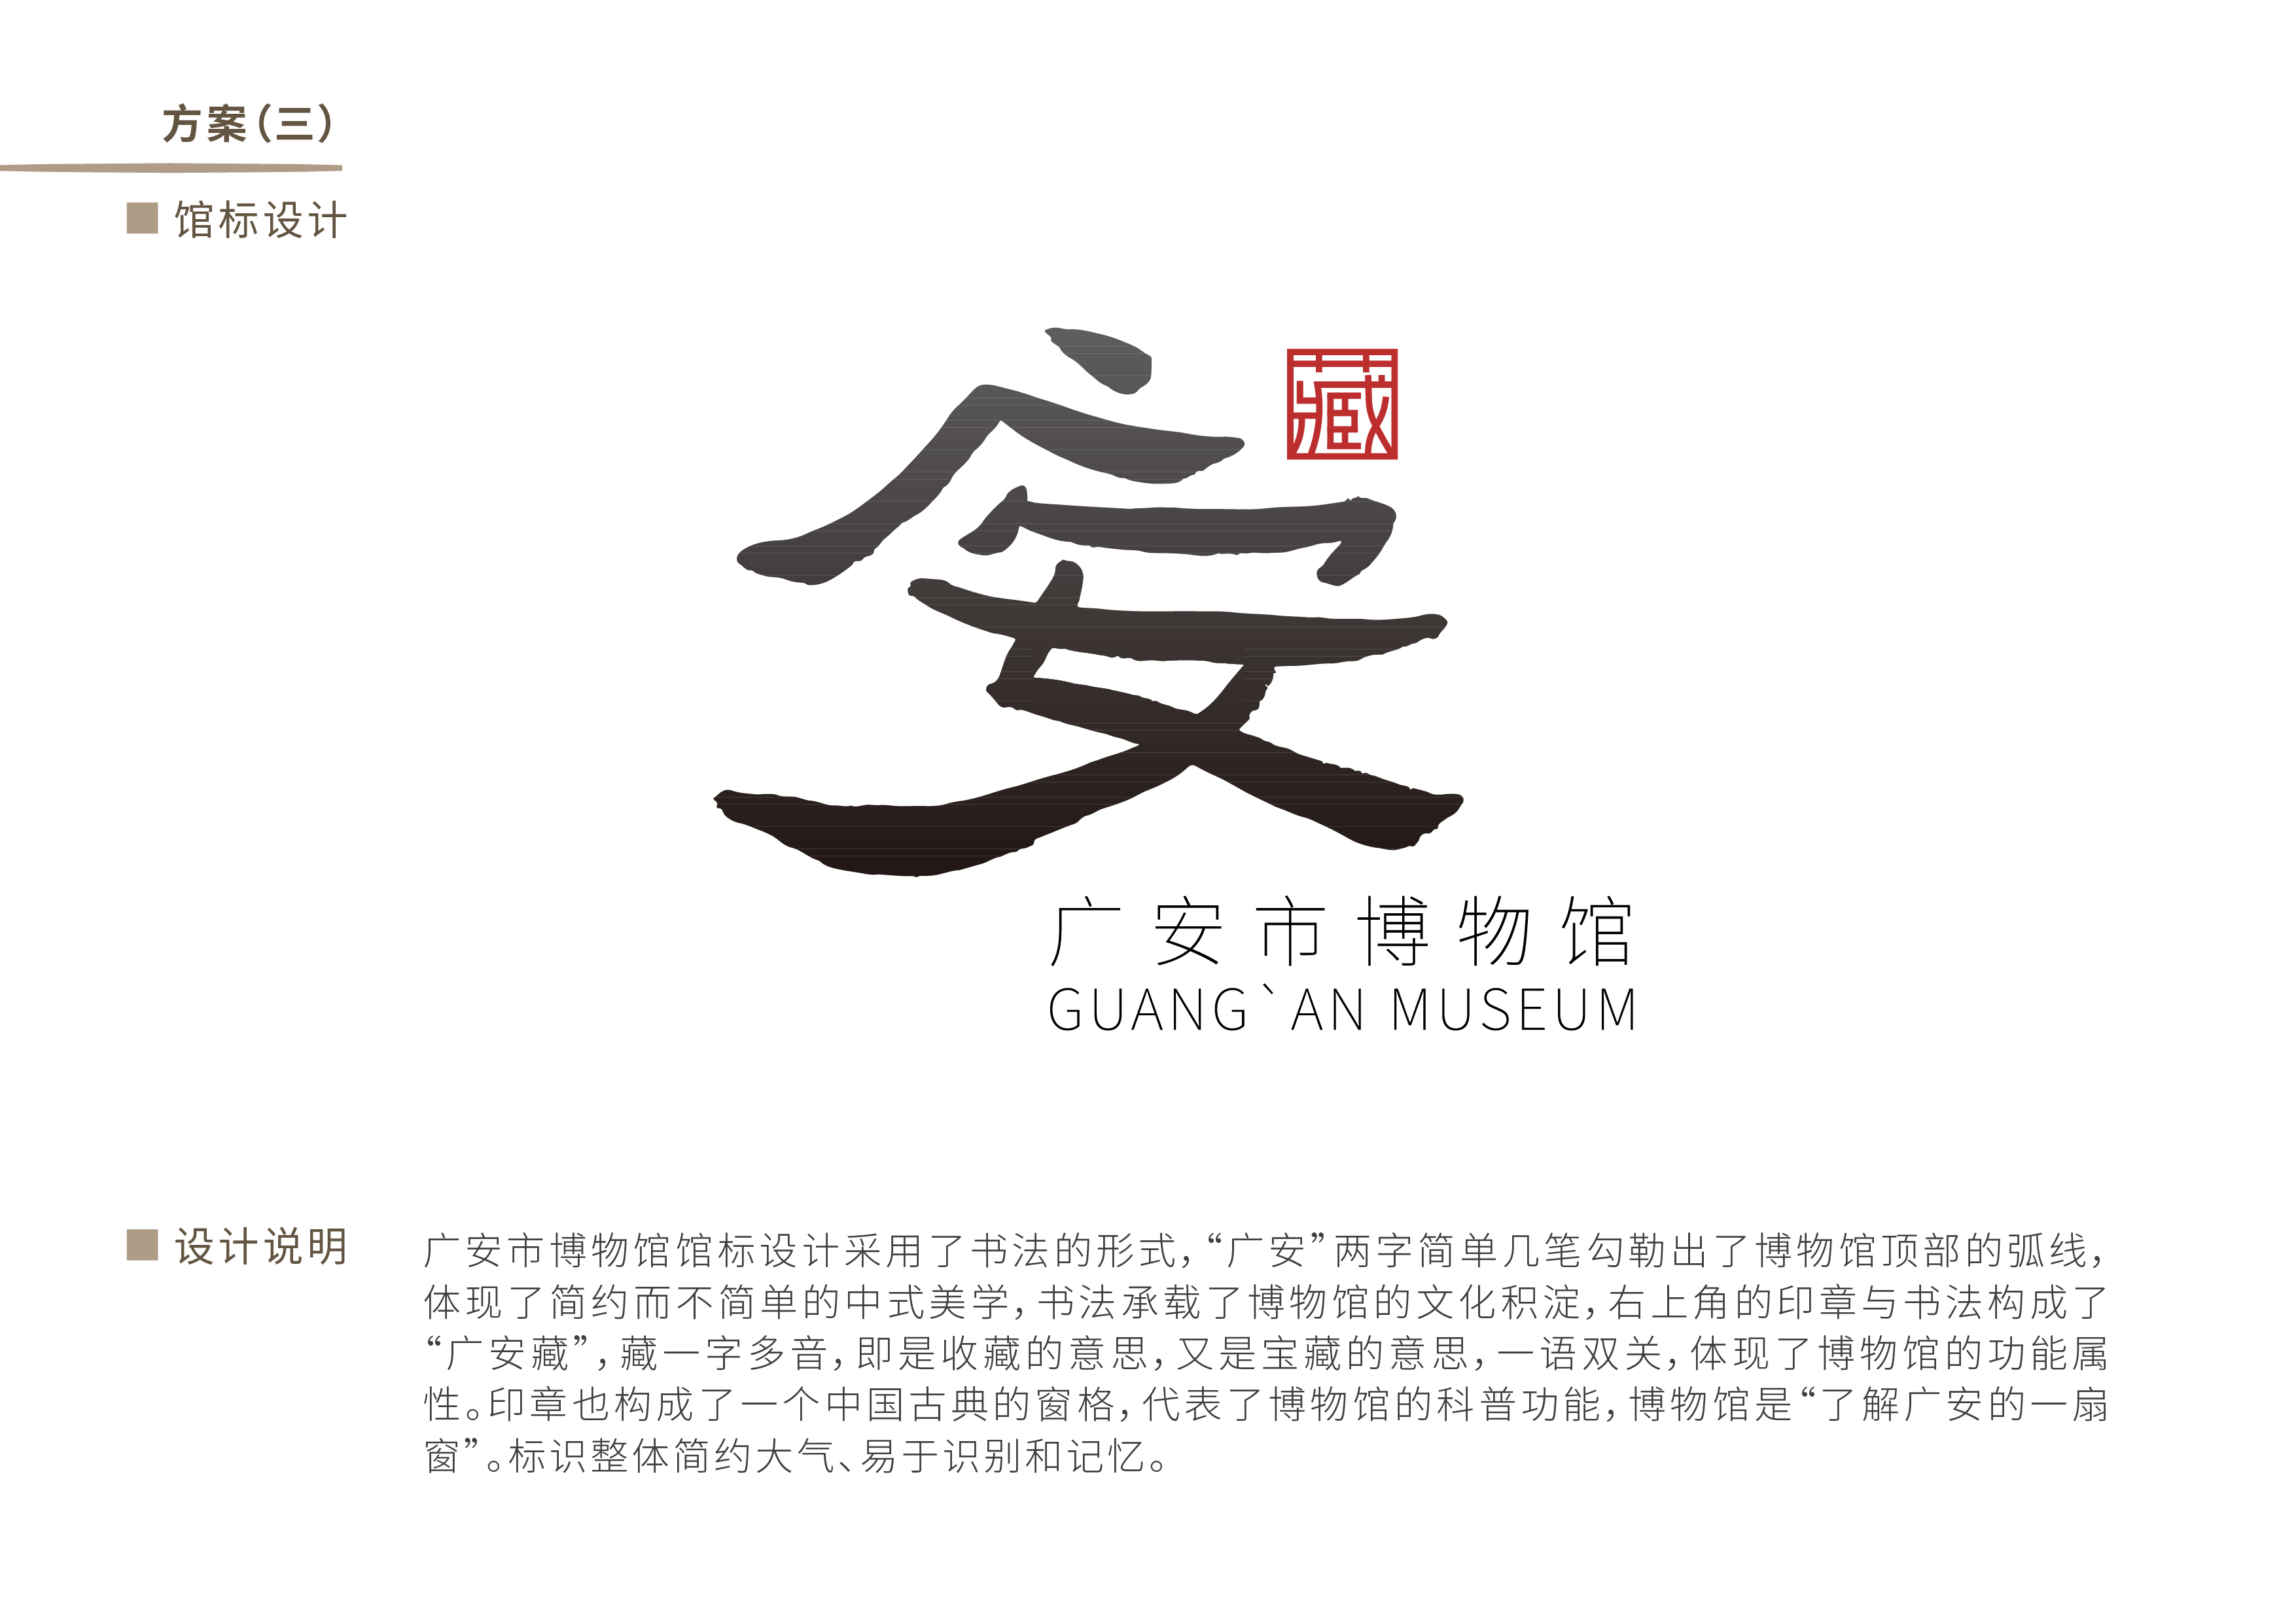 广安市博物馆